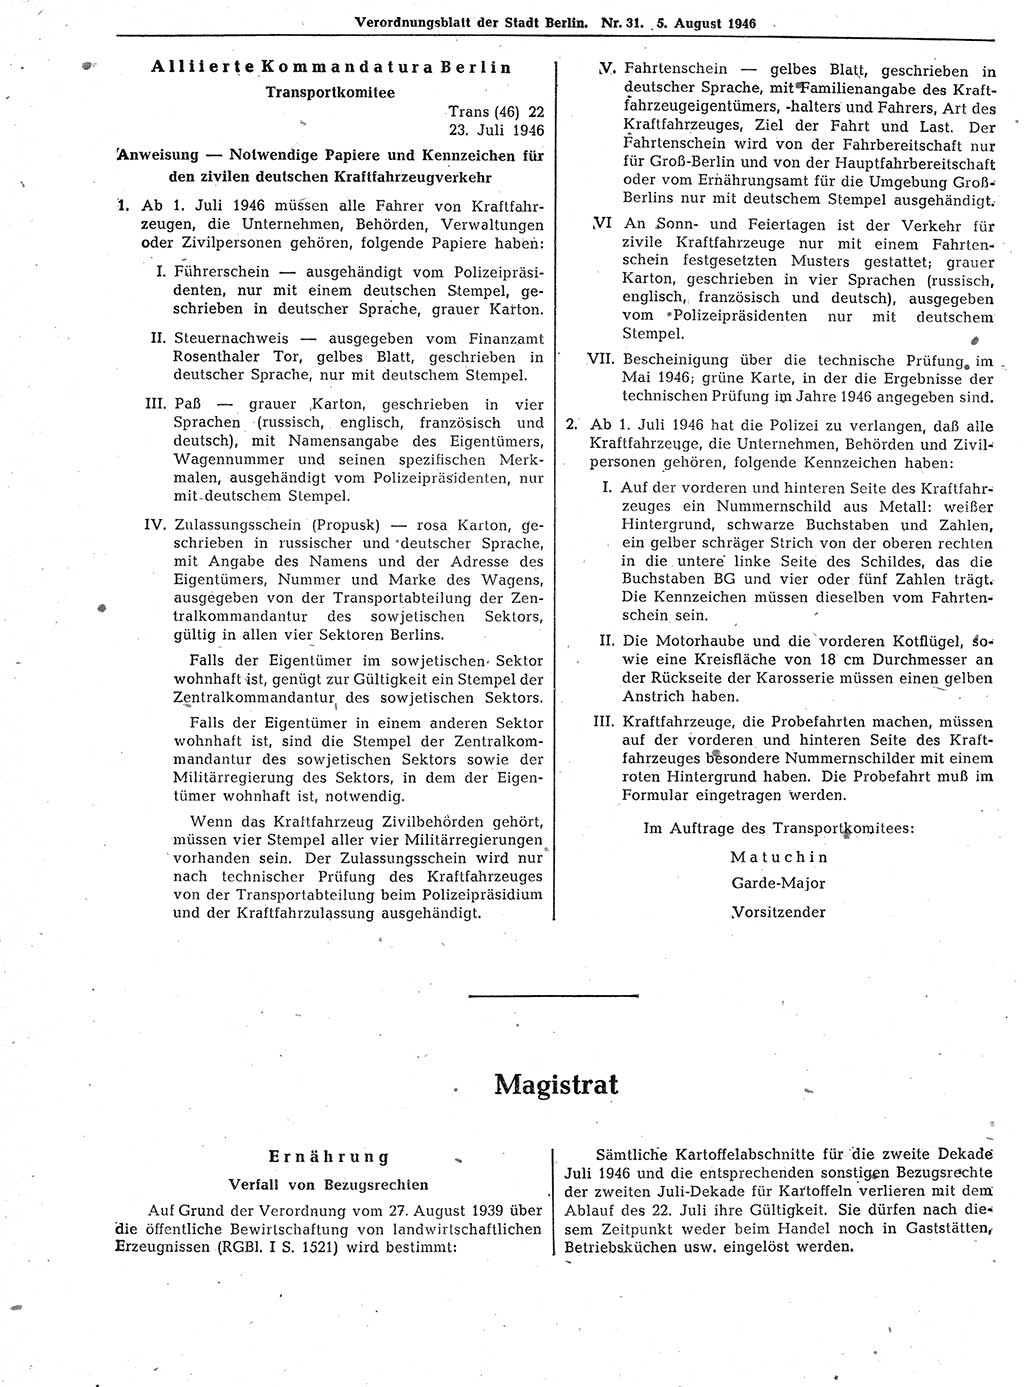 Verordnungsblatt (VOBl.) der Stadt Berlin, für Groß-Berlin 1946, Seite 262 (VOBl. Bln. 1946, S. 262)